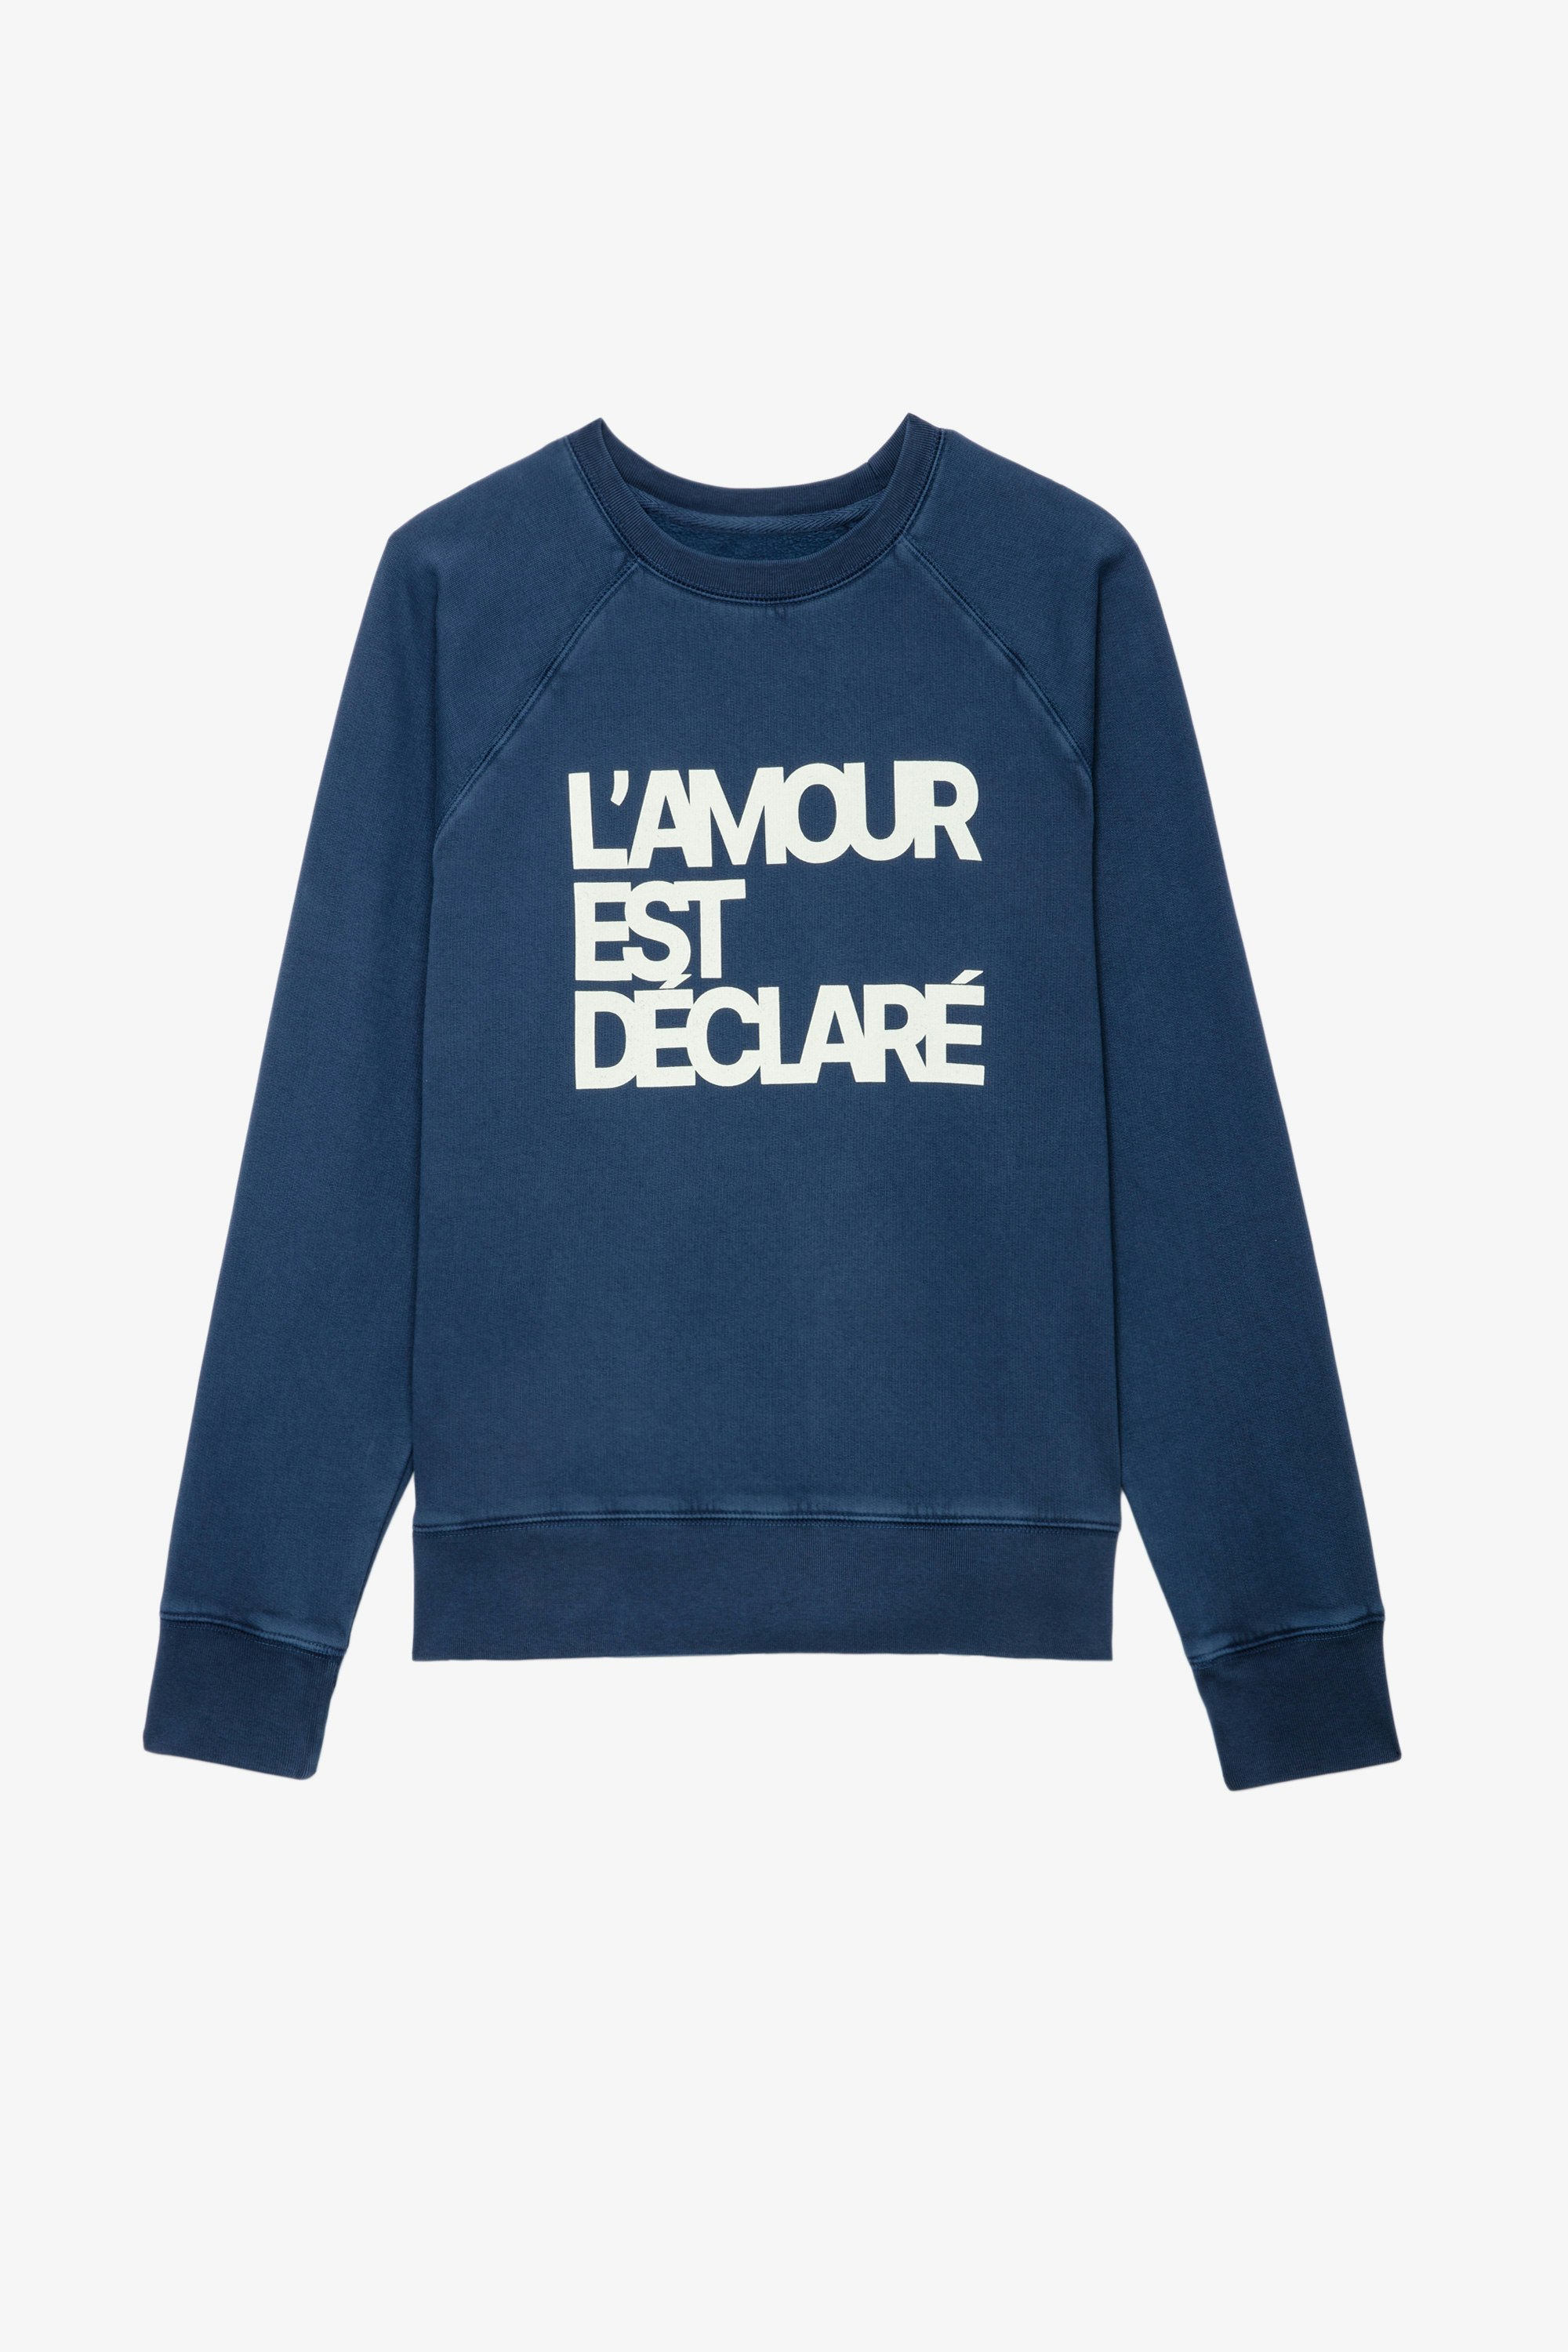 Sweatshirt Upper L'Amour Est Déclaré Sweatshirt en coton bleu orné d'une application "L'amour est déclaré" femme